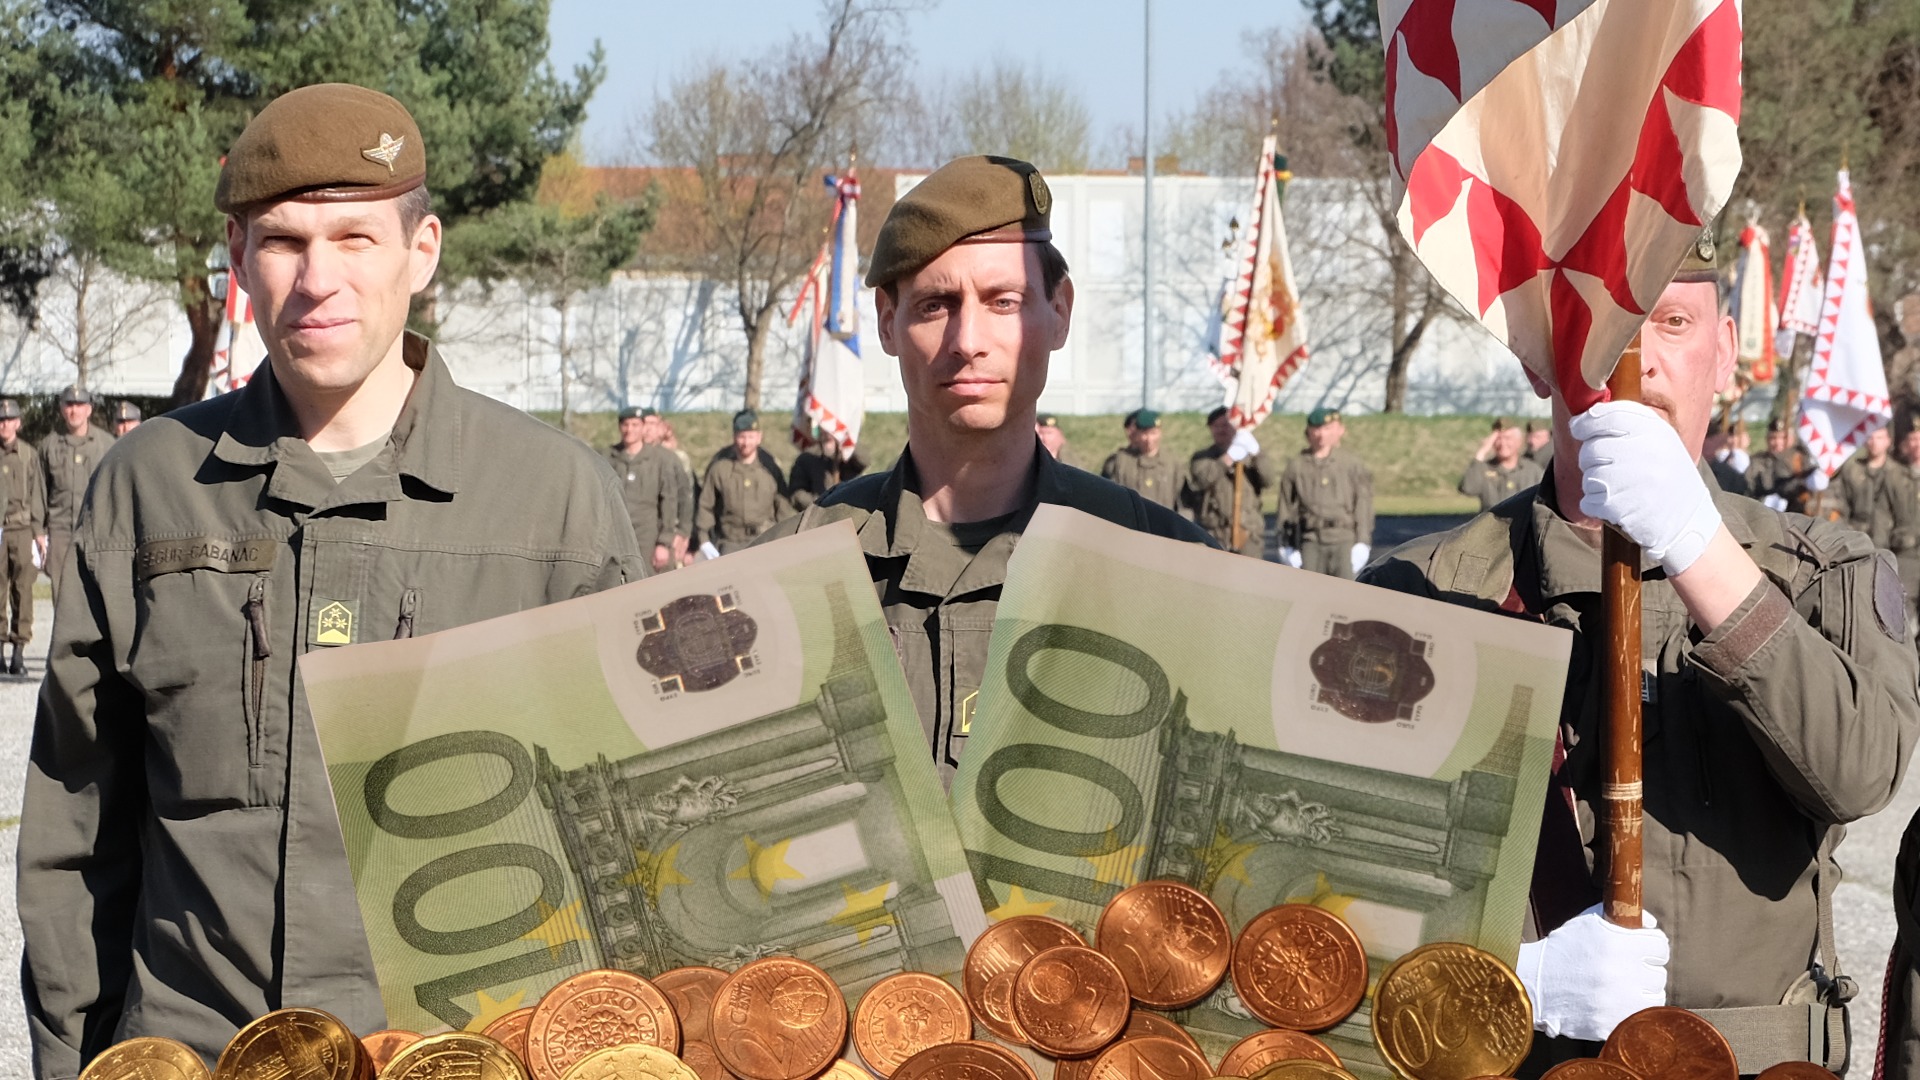 Miliz-Covid19-Corona-Einsatz-Österreich-Bundesheer-Verteidigungsministerium-Geld-Prämie